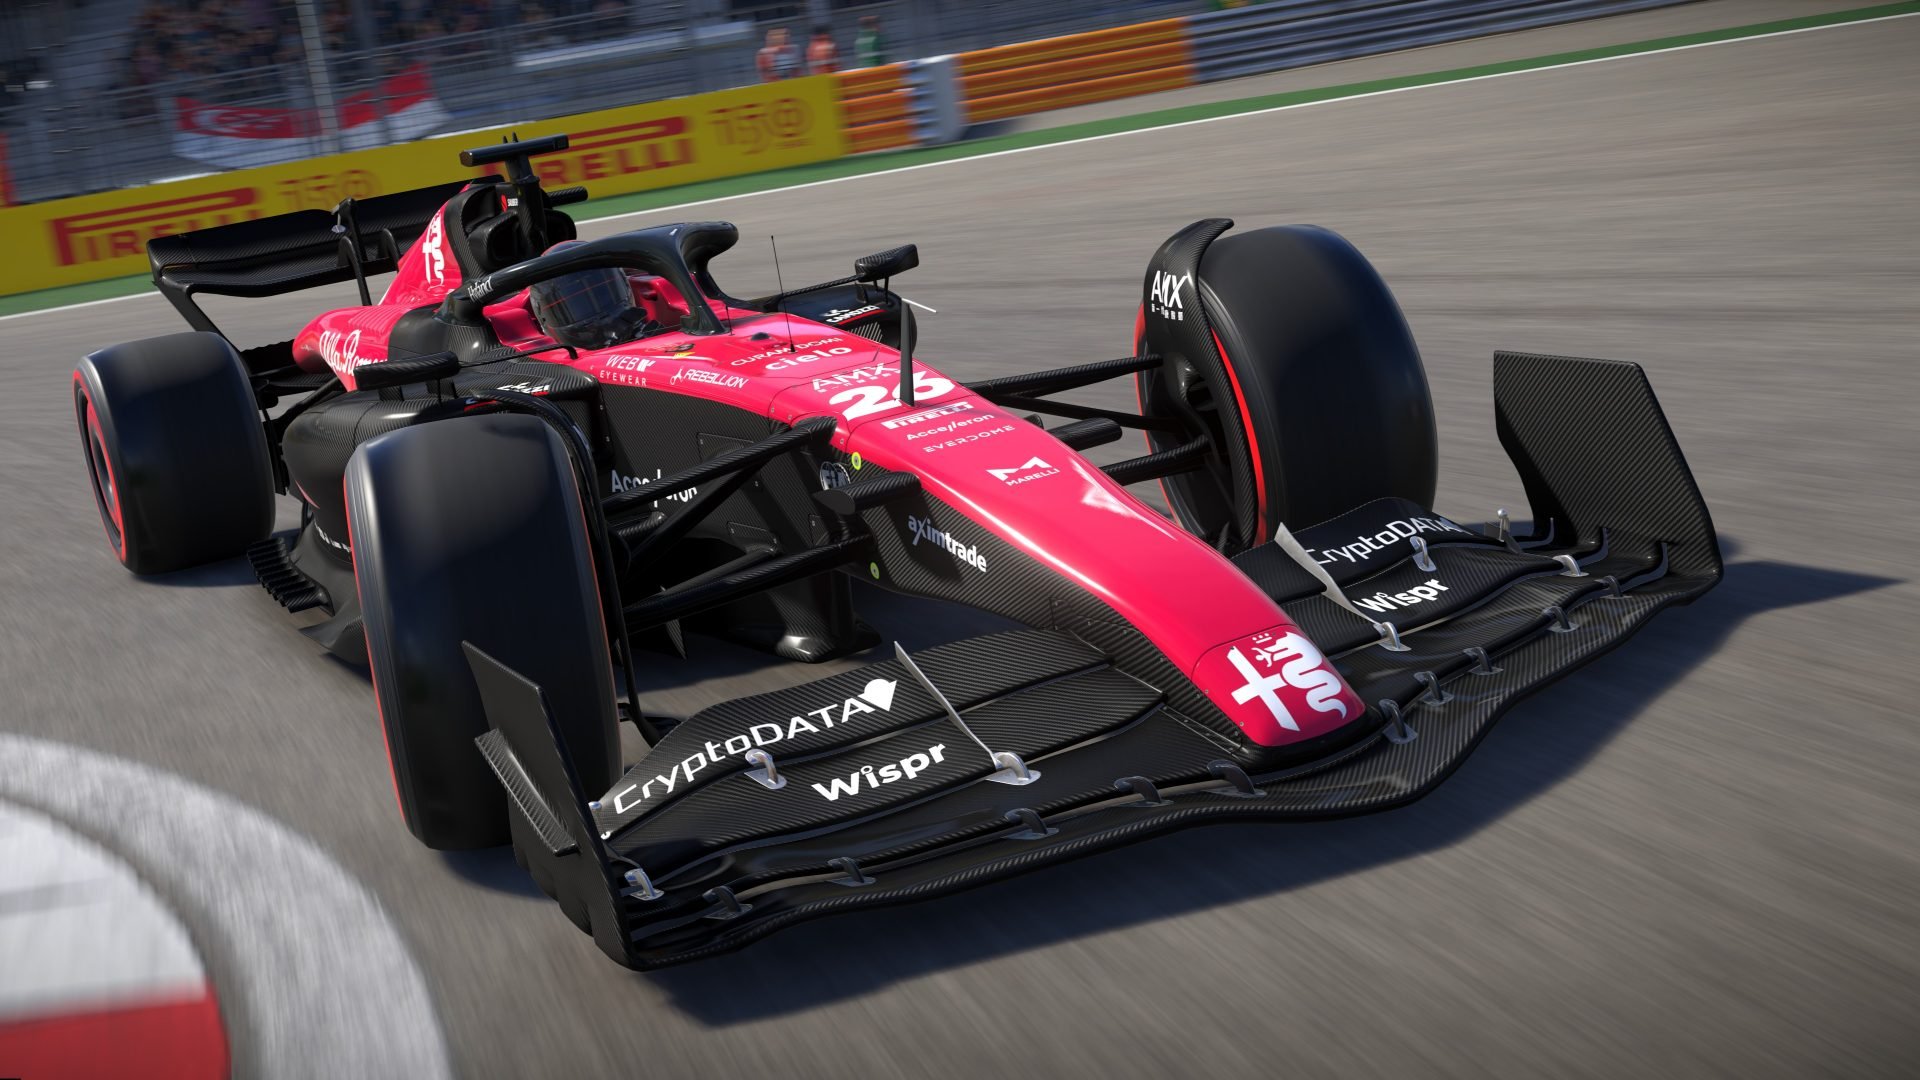 More information about "F1 23 EA Sports si presenta oggi con un team di fantasia"